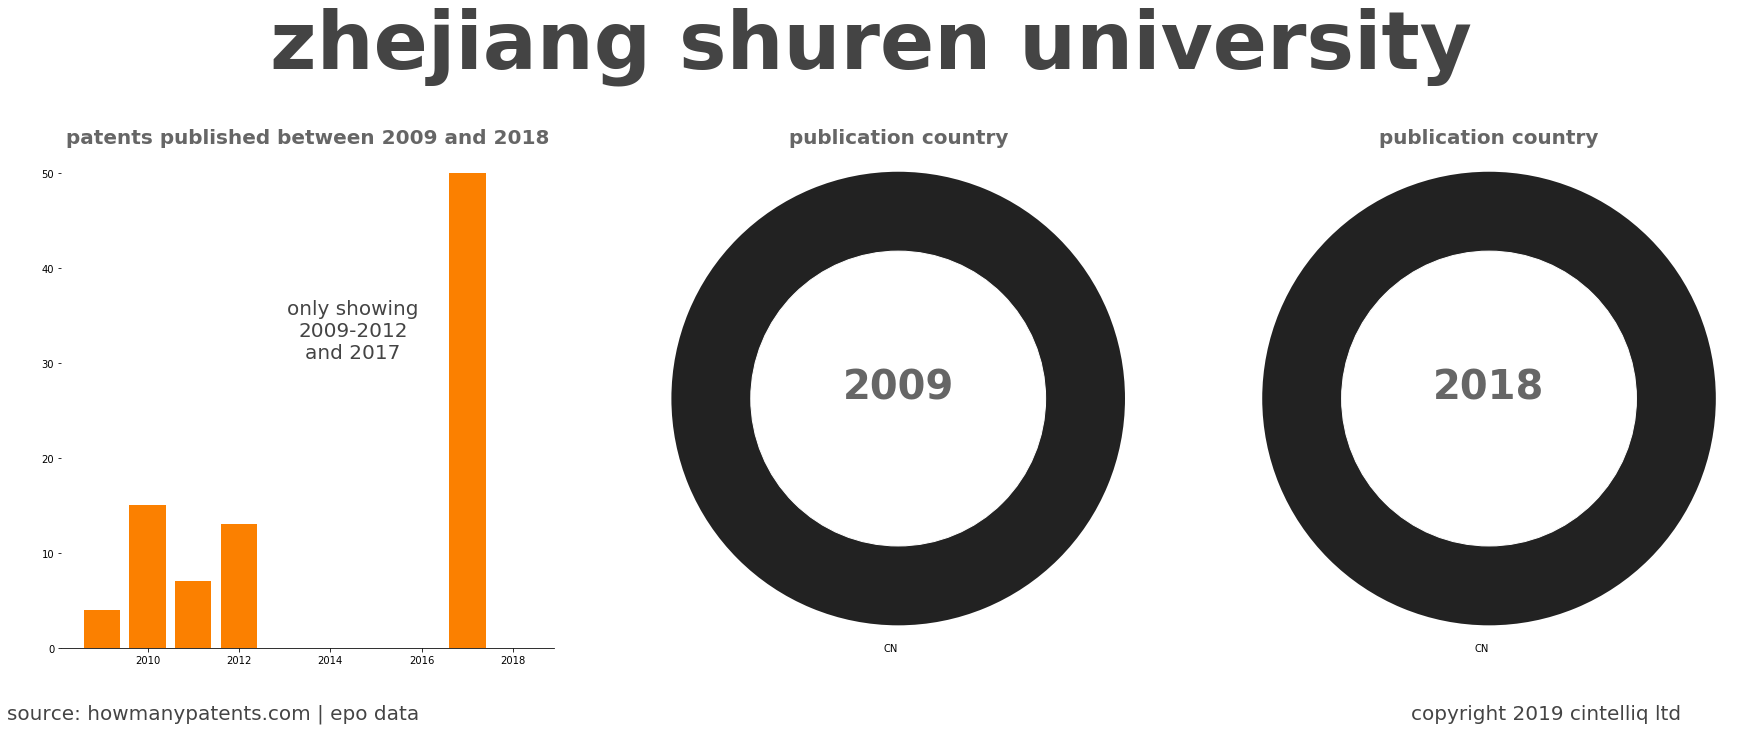 summary of patents for Zhejiang Shuren University